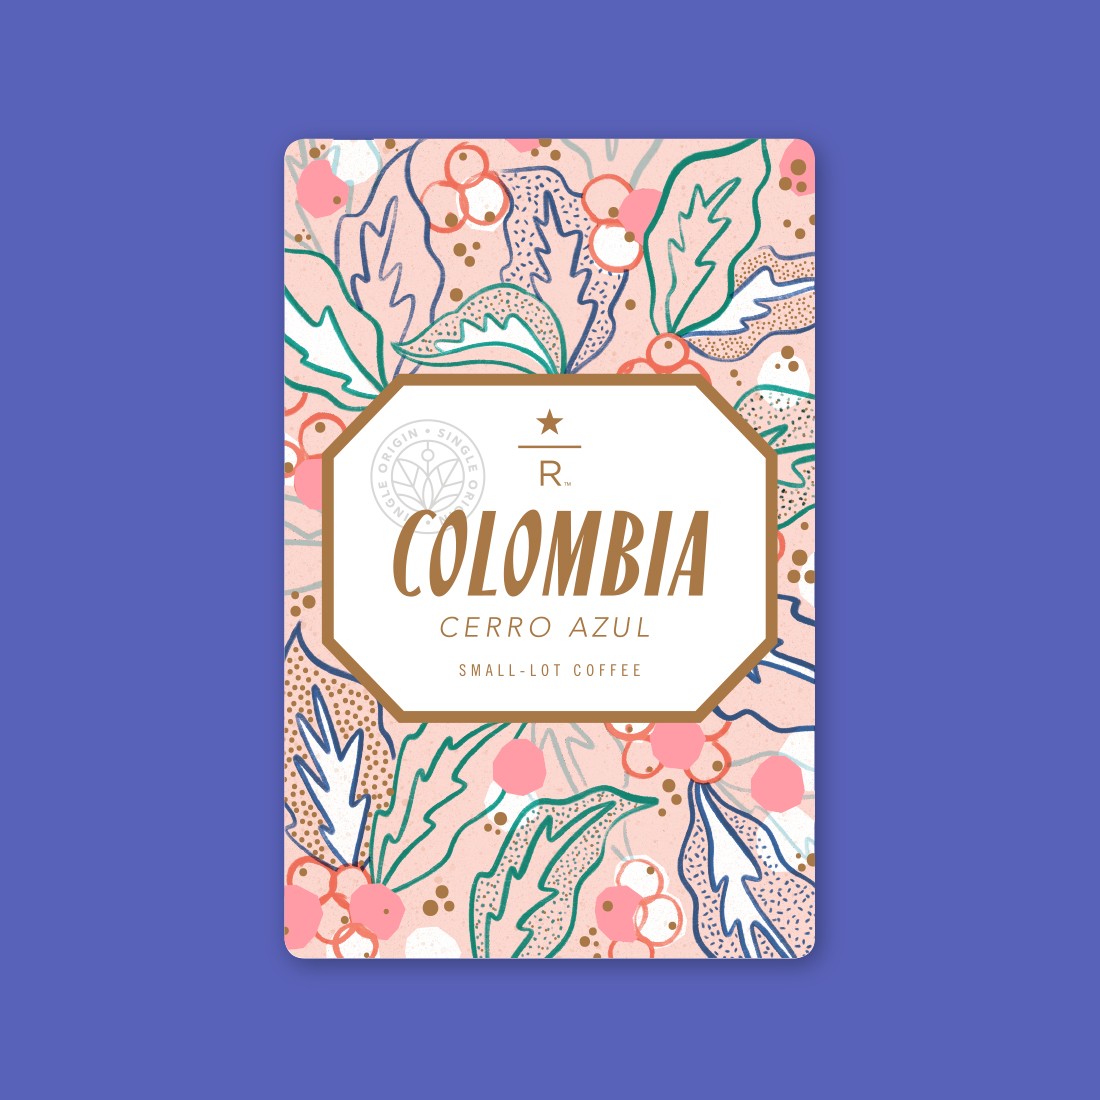 Coffee card illustration for COLOMBIA CERRO AZUL